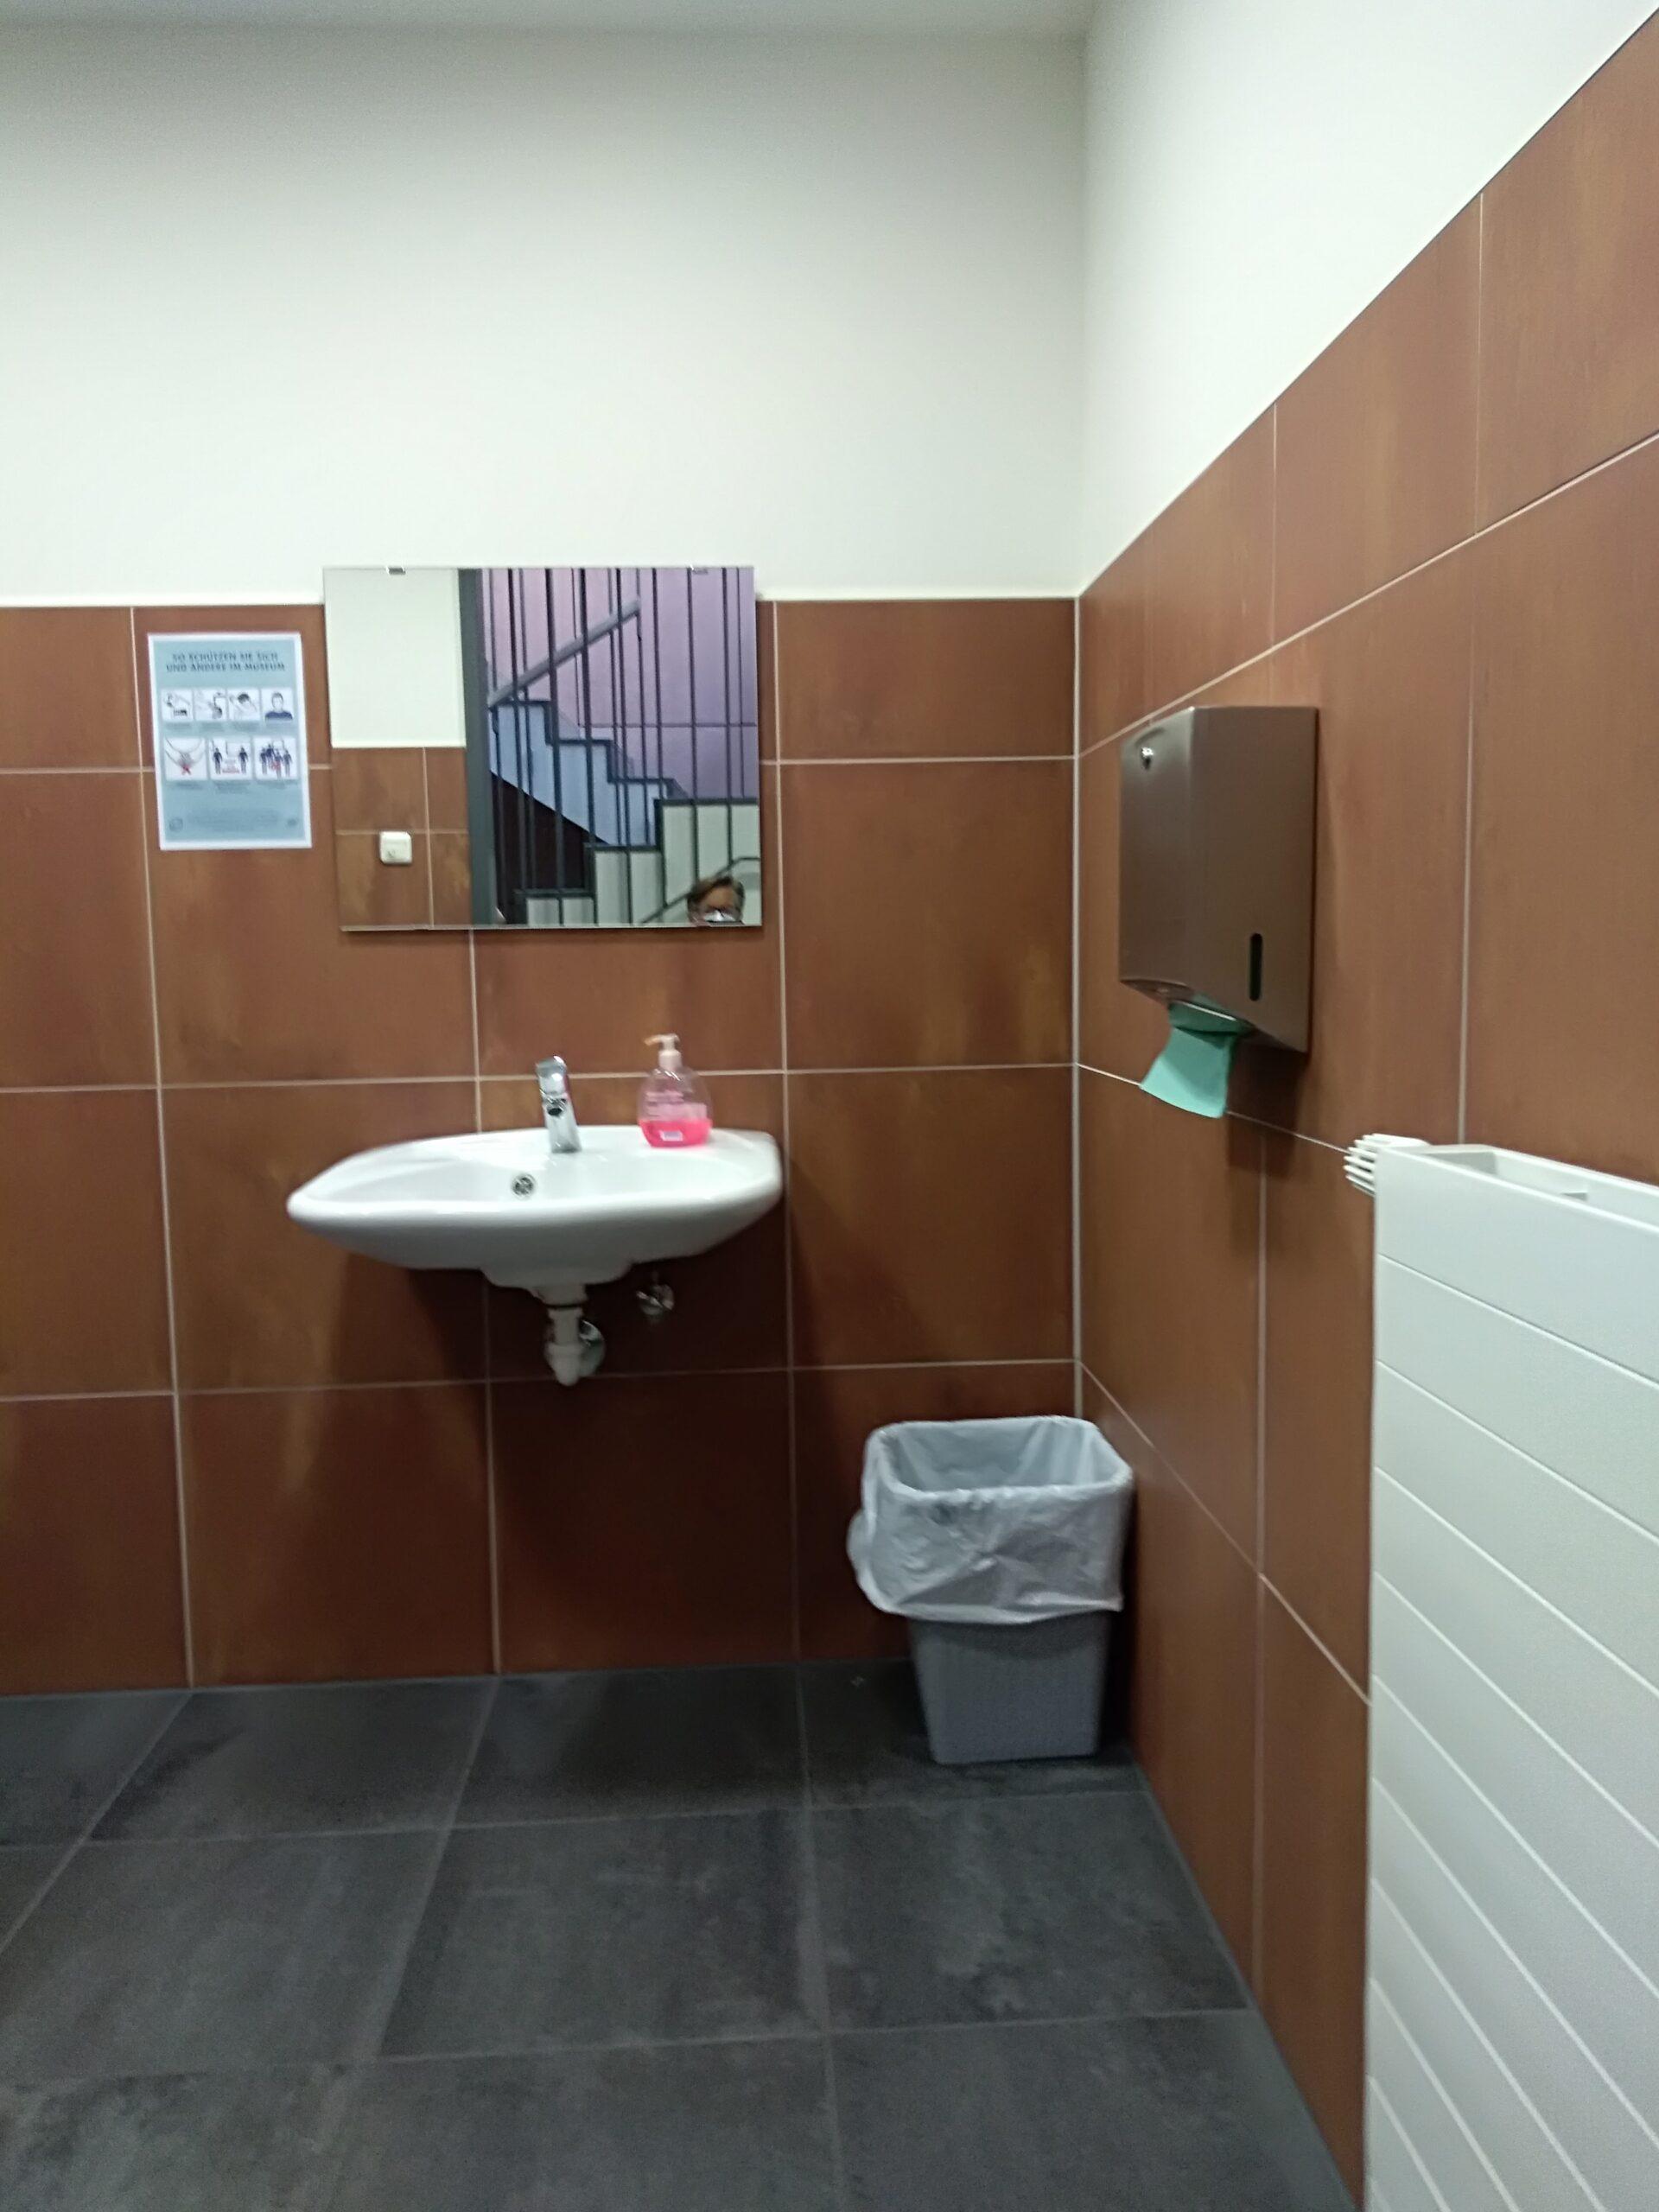 Zu sehen ist ein braun gefliester Raum von inner mit Spiegel über einem weißen Waschbecken, Papierkorb und Trockentuchspender.